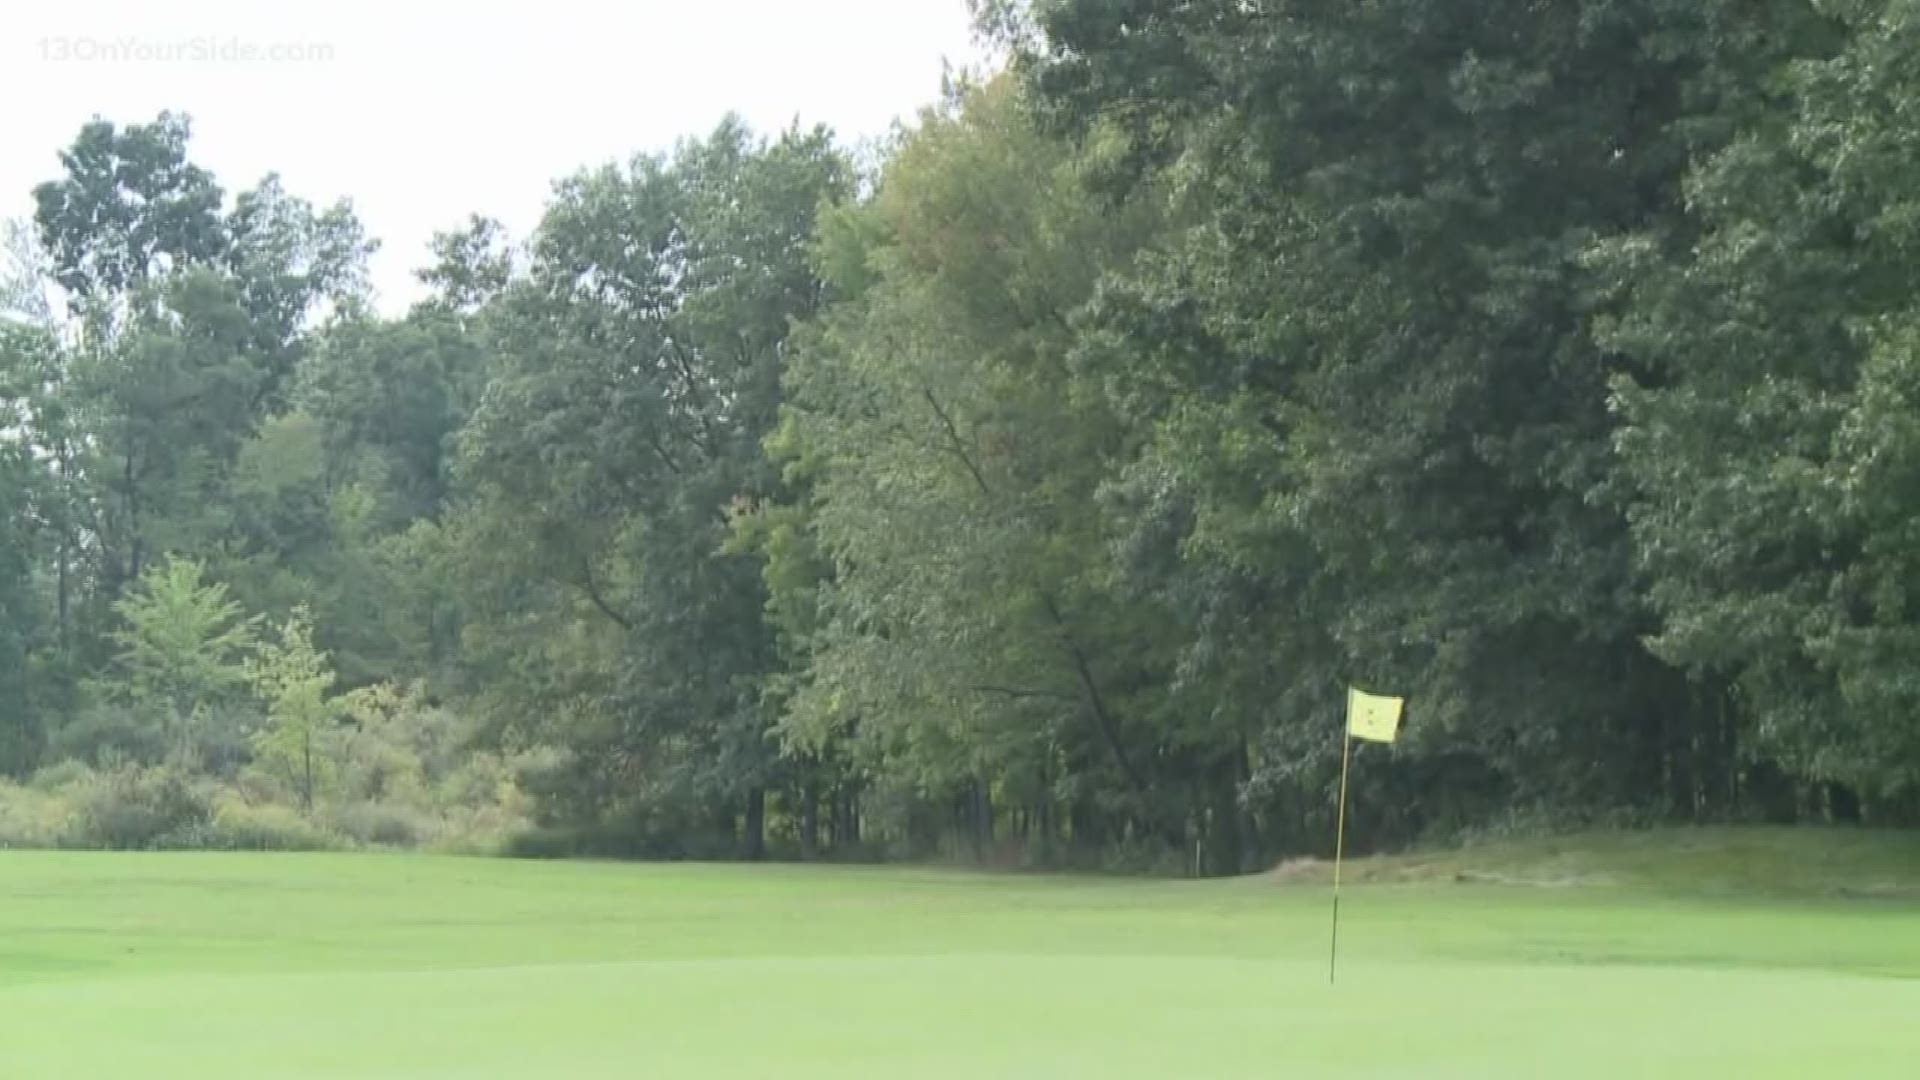 Silver Lake Golf Course could become condos